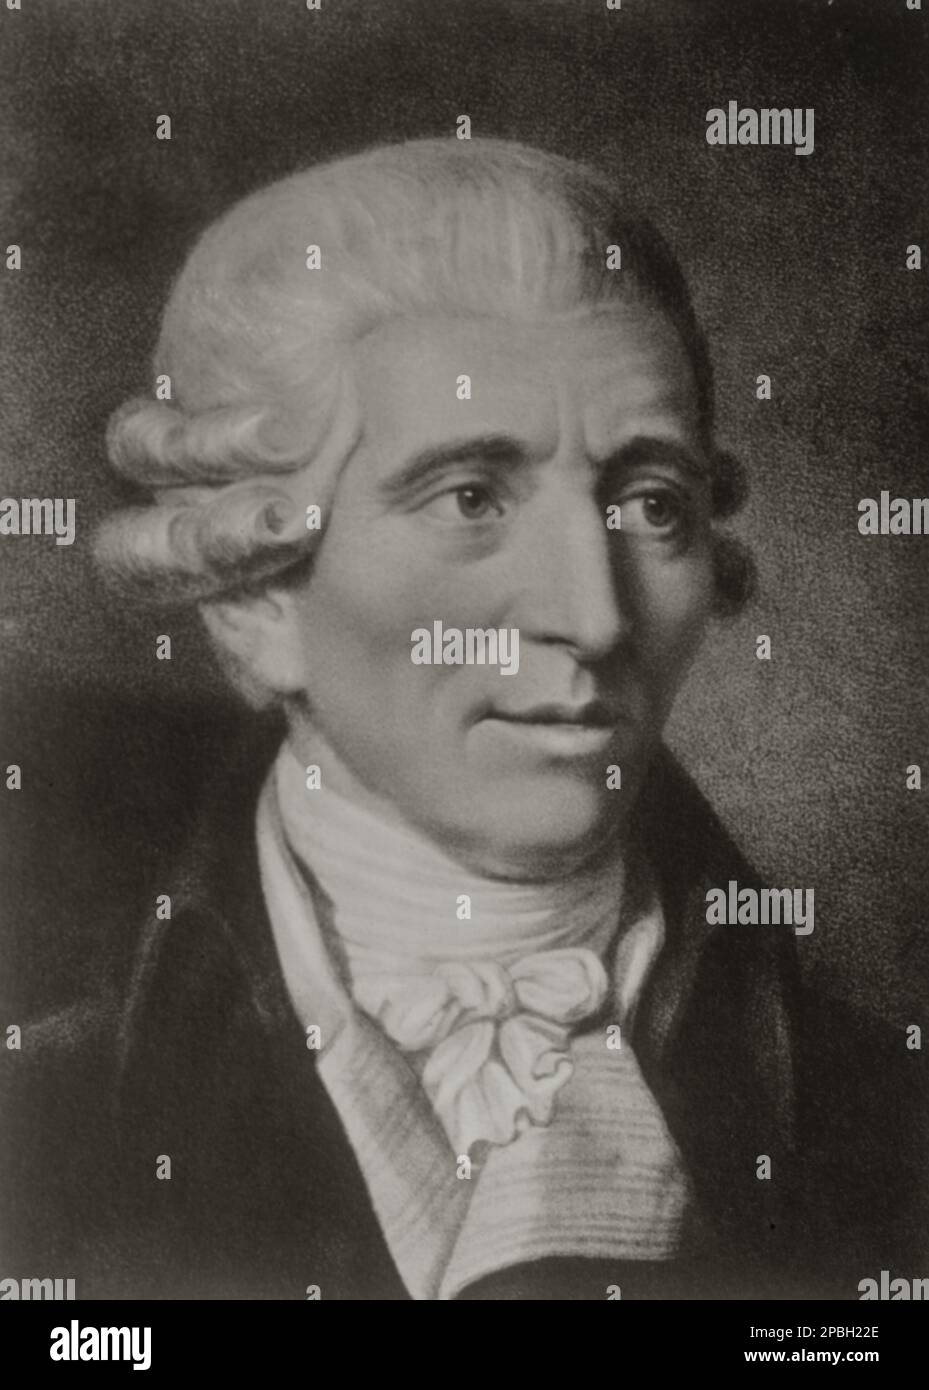 Le célèbre compositeur autrichien de musique baroque Franz JOSEPH HAYDN ( 1732 - 1809 ).il était l'un des compositeurs les plus importants de la période classique, et est appelé par certains le 'Père de la Symphonie' et 'Père du Quatuor à cordes'. Originaire d'Autriche depuis longtemps, Haydn a passé une grande partie de sa carrière en tant que musicien de cour pour la riche famille hongroise Esterhezy sur leur propriété reculée. Isolé d'autres compositeurs et tendances de la musique jusqu'à la fin de sa longue vie, il a été, comme il l'a dit, 'forcé de devenir original'. Joseph Haydn était le frère de Michael Haydn, lui-même très considéré Banque D'Images